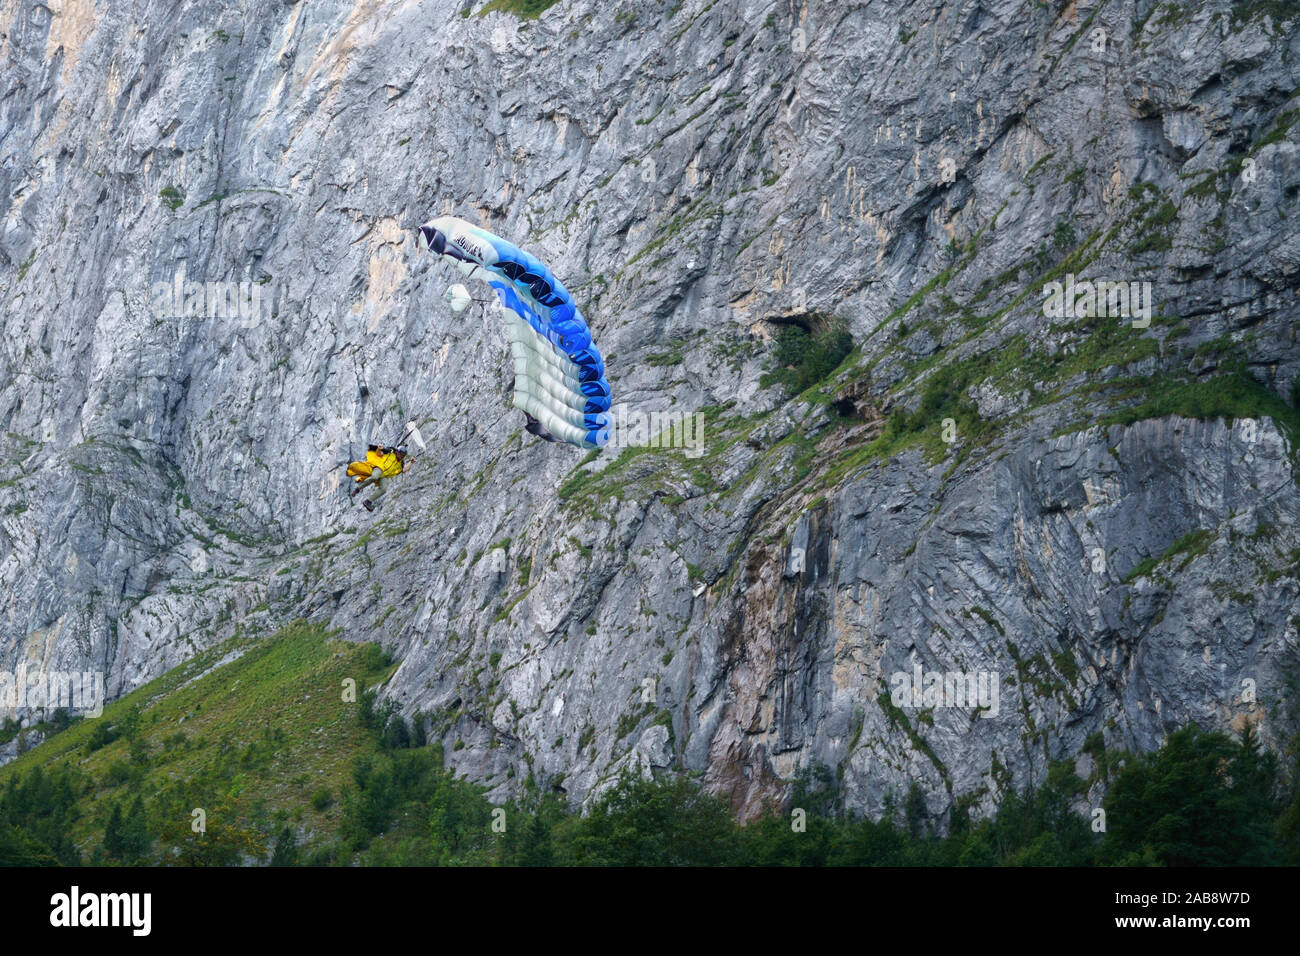 BASE jump nel villaggio svizzero di Lauterbrunnen, cantone di Berna, Svizzera. Lauterbrunnen con le sue spettacolari scogliere è una mecca per wingsuit flying. Foto Stock